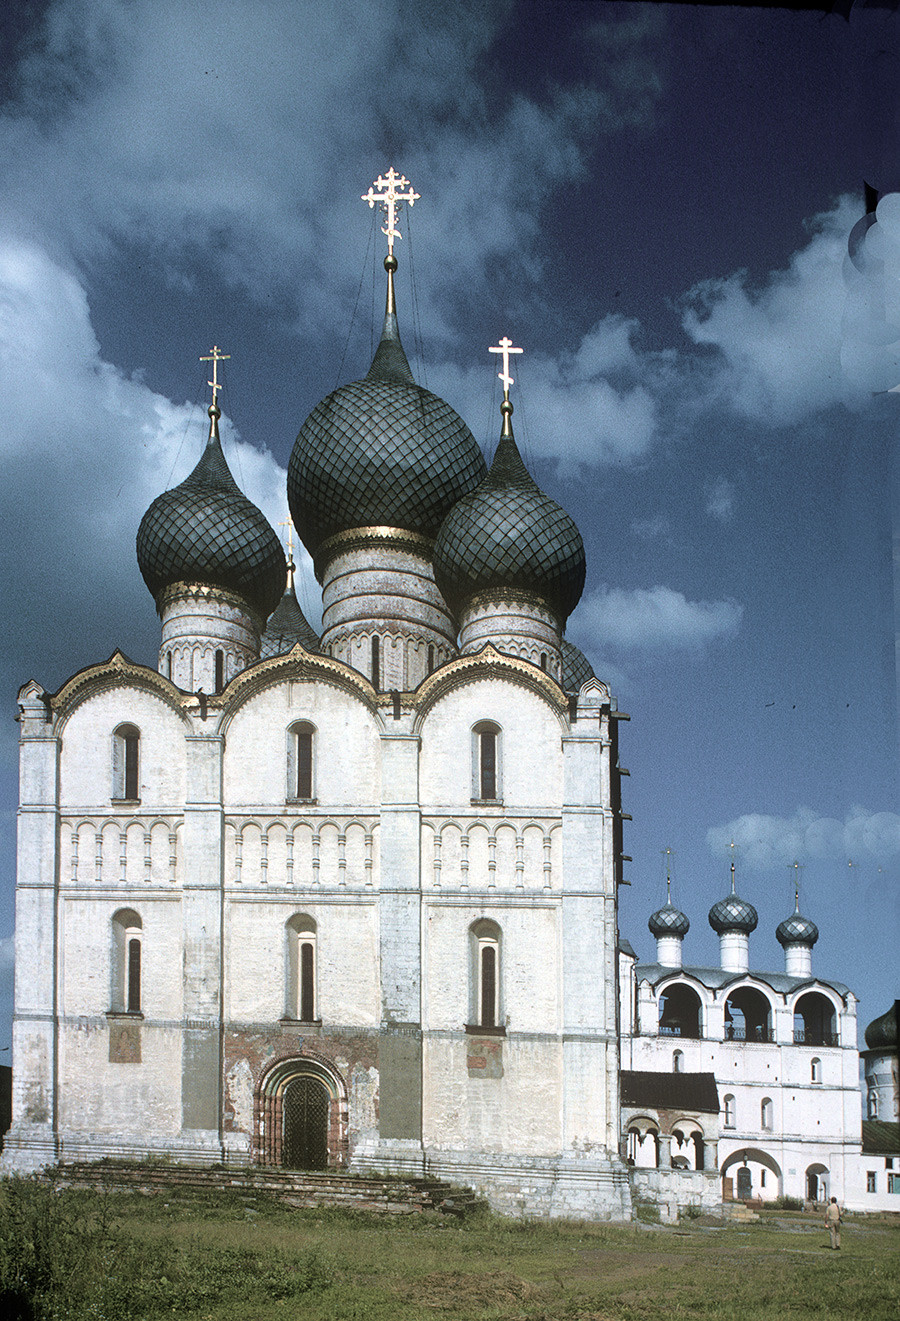 ウスペンスキー聖堂と鐘楼。西側の景観。1995年6月28日。